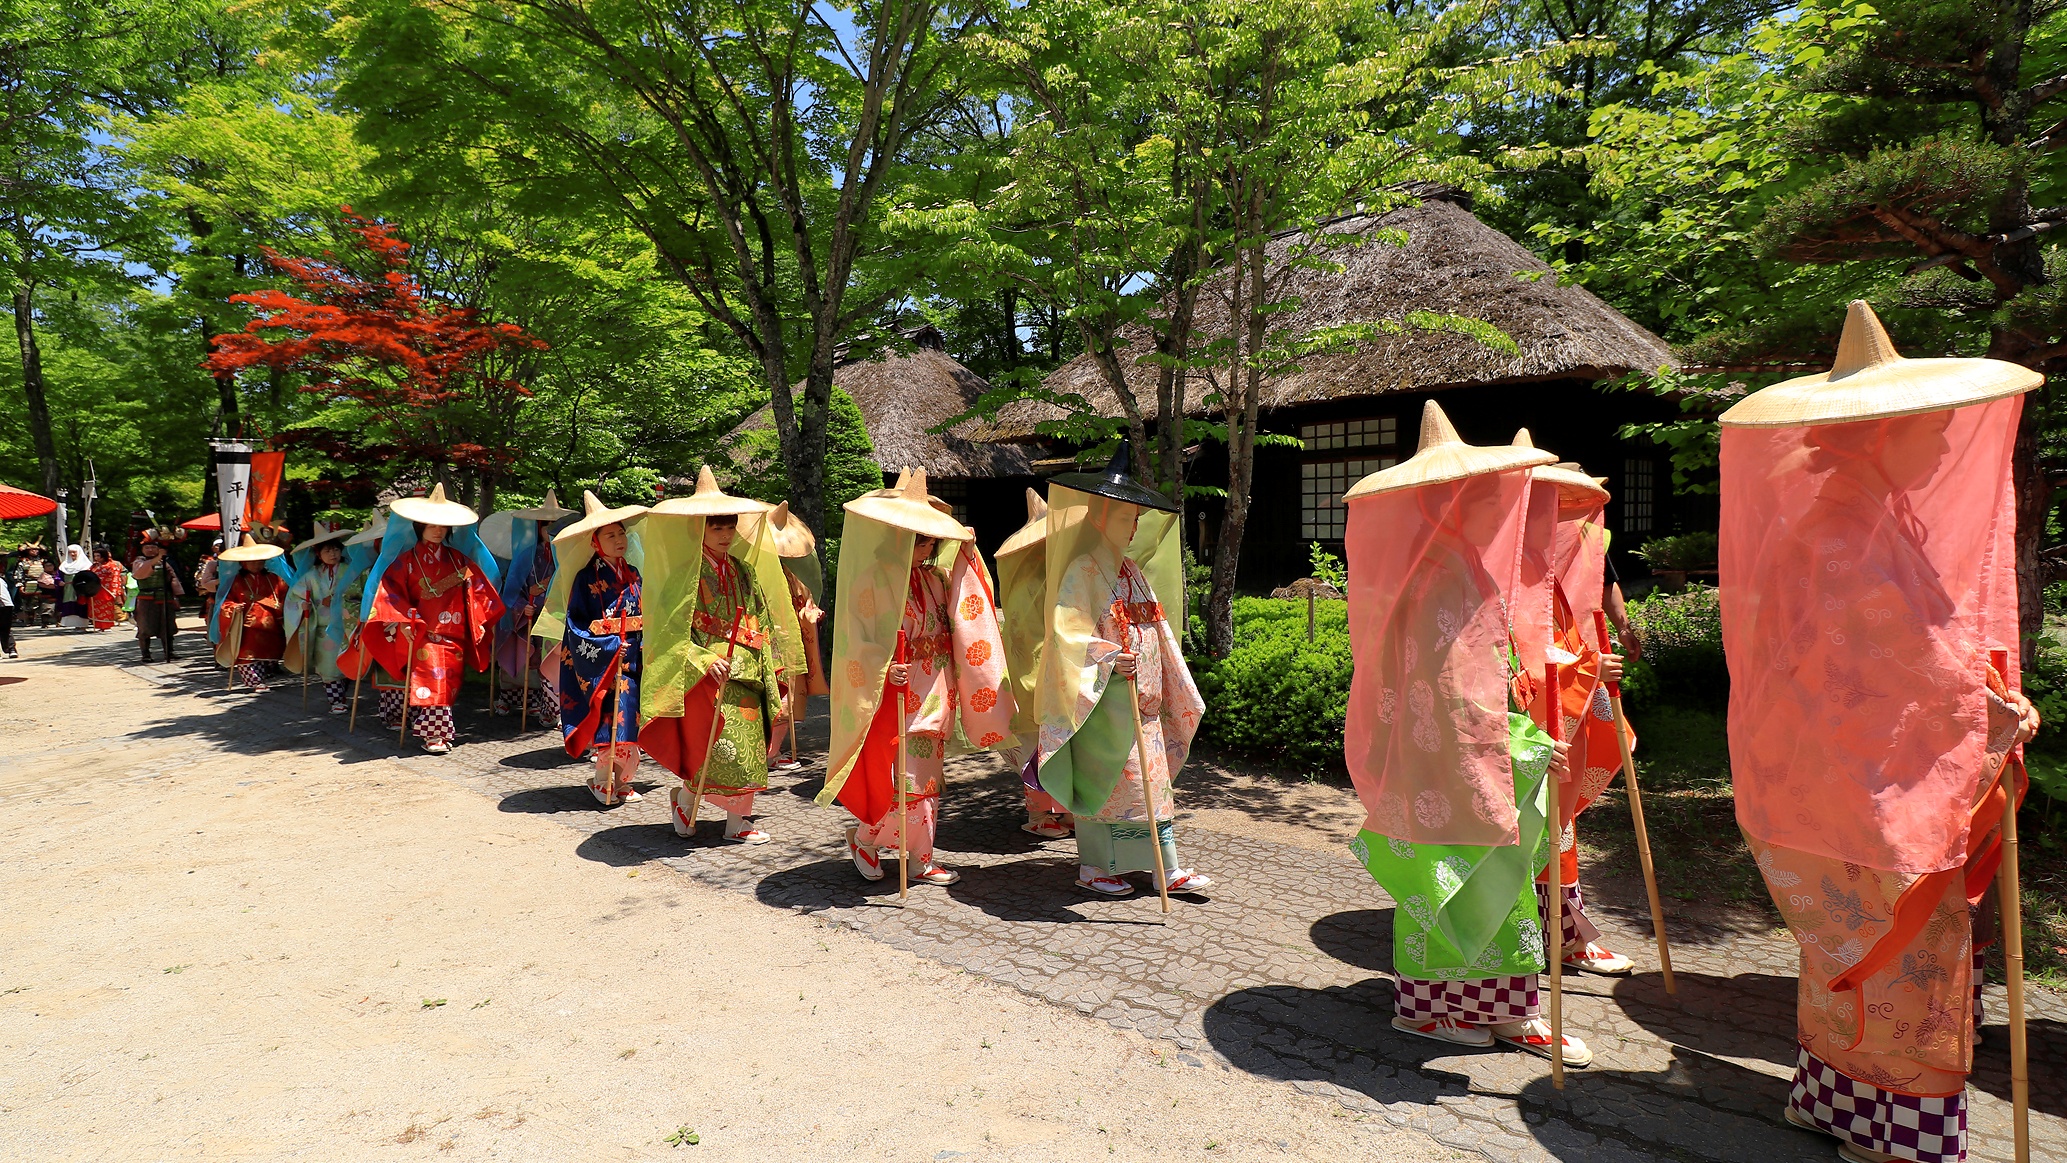 湯西川の一大イベント平家琵琶や雅楽など催しが繰り広げられ、平家の荘厳なロマンがよみがえります。。。